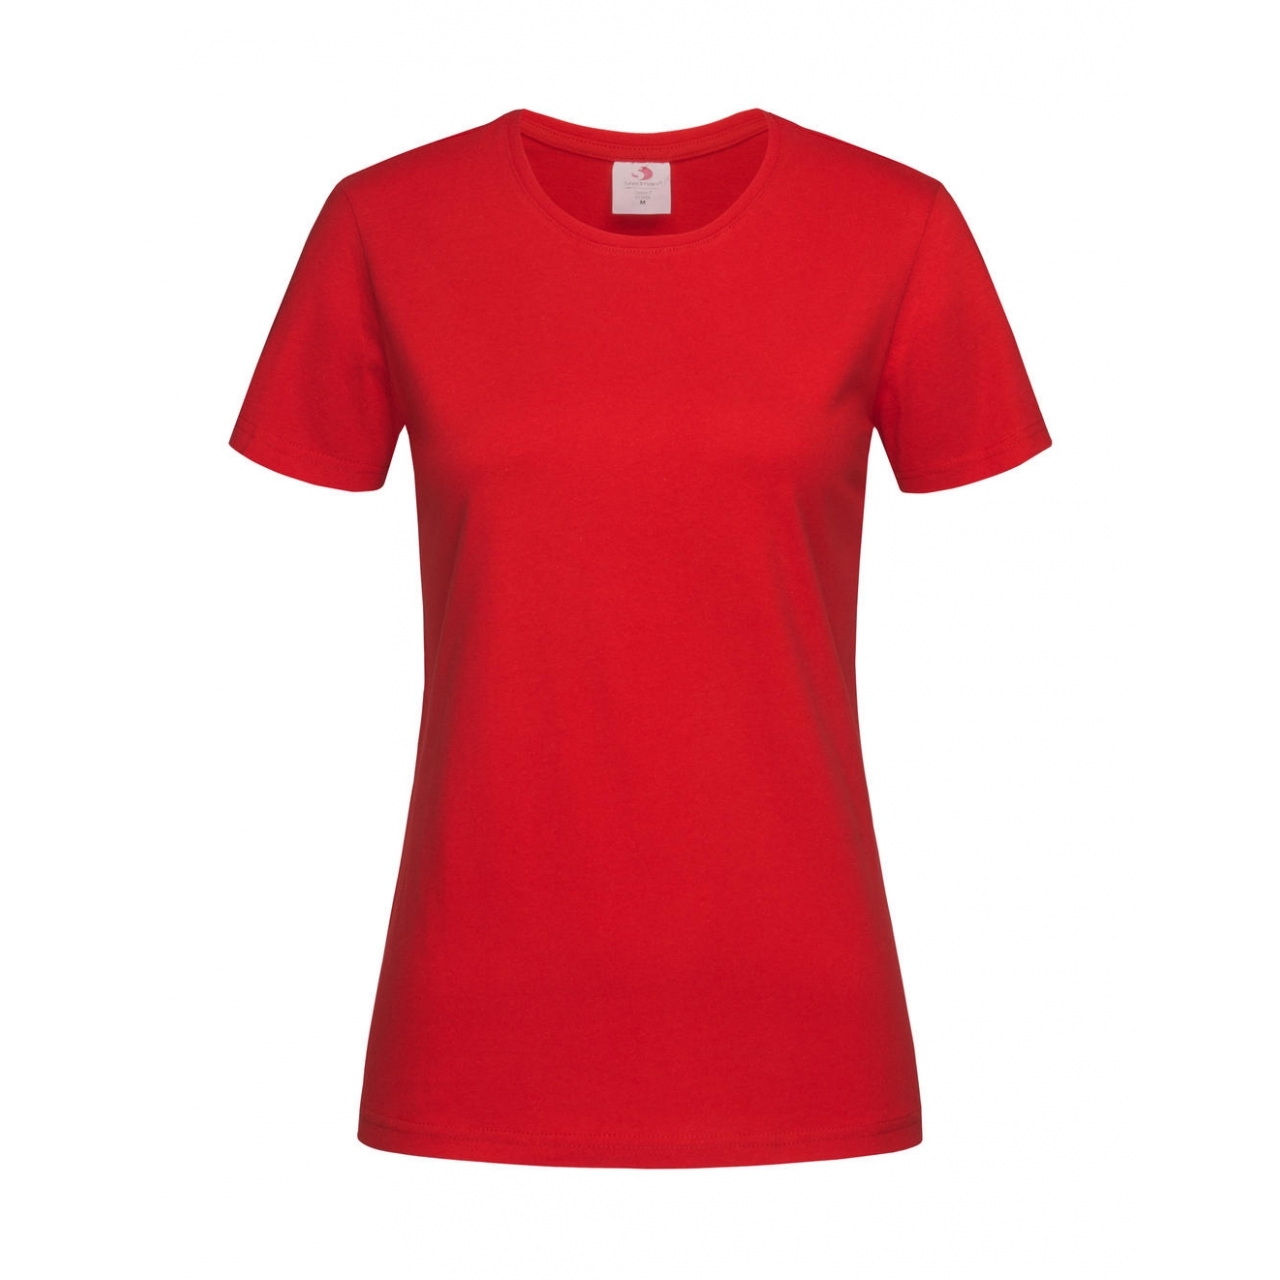 Tričko dámské Stedman Fitted s kulatým výstřihem - červené, XL